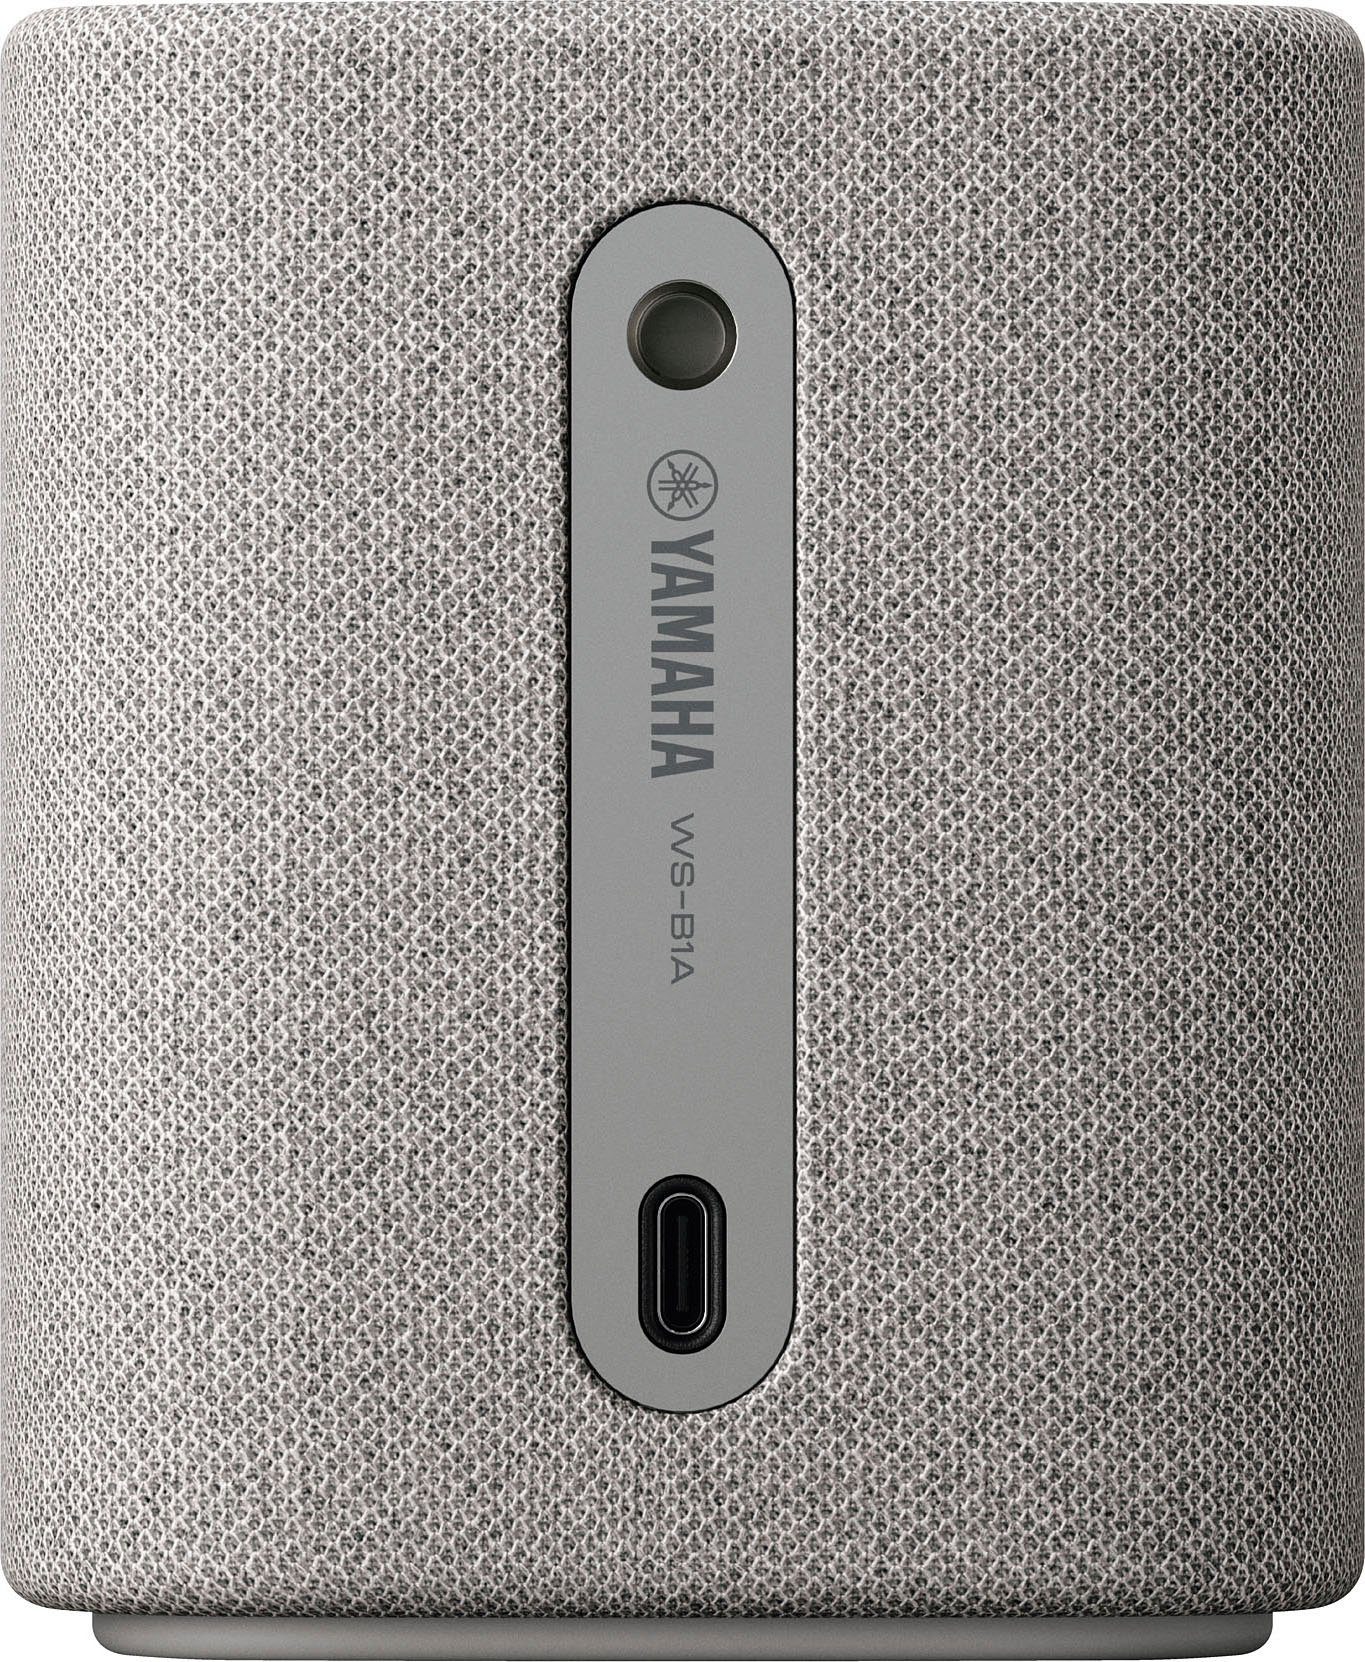 Yamaha WS-B1A Portable-Lautsprecher (A2DP Bluetooth, AVRCP 10 W) Bluetooth